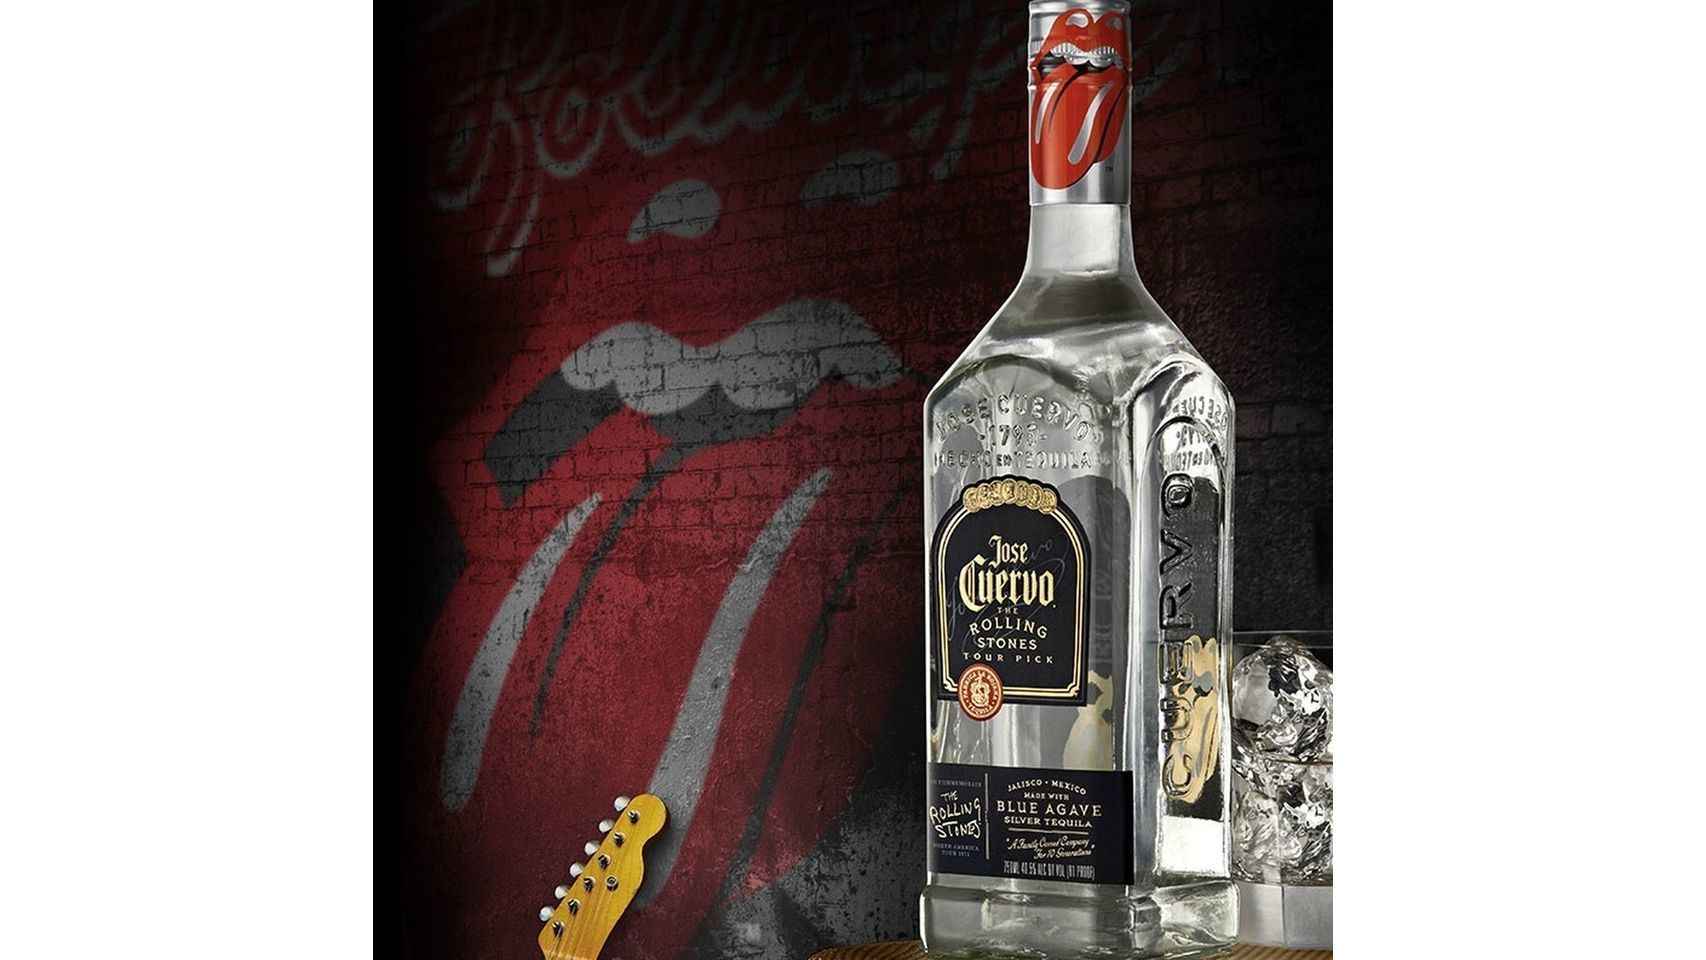 Botella de tequila Jose Cuervo, edición The Rolling Stones.